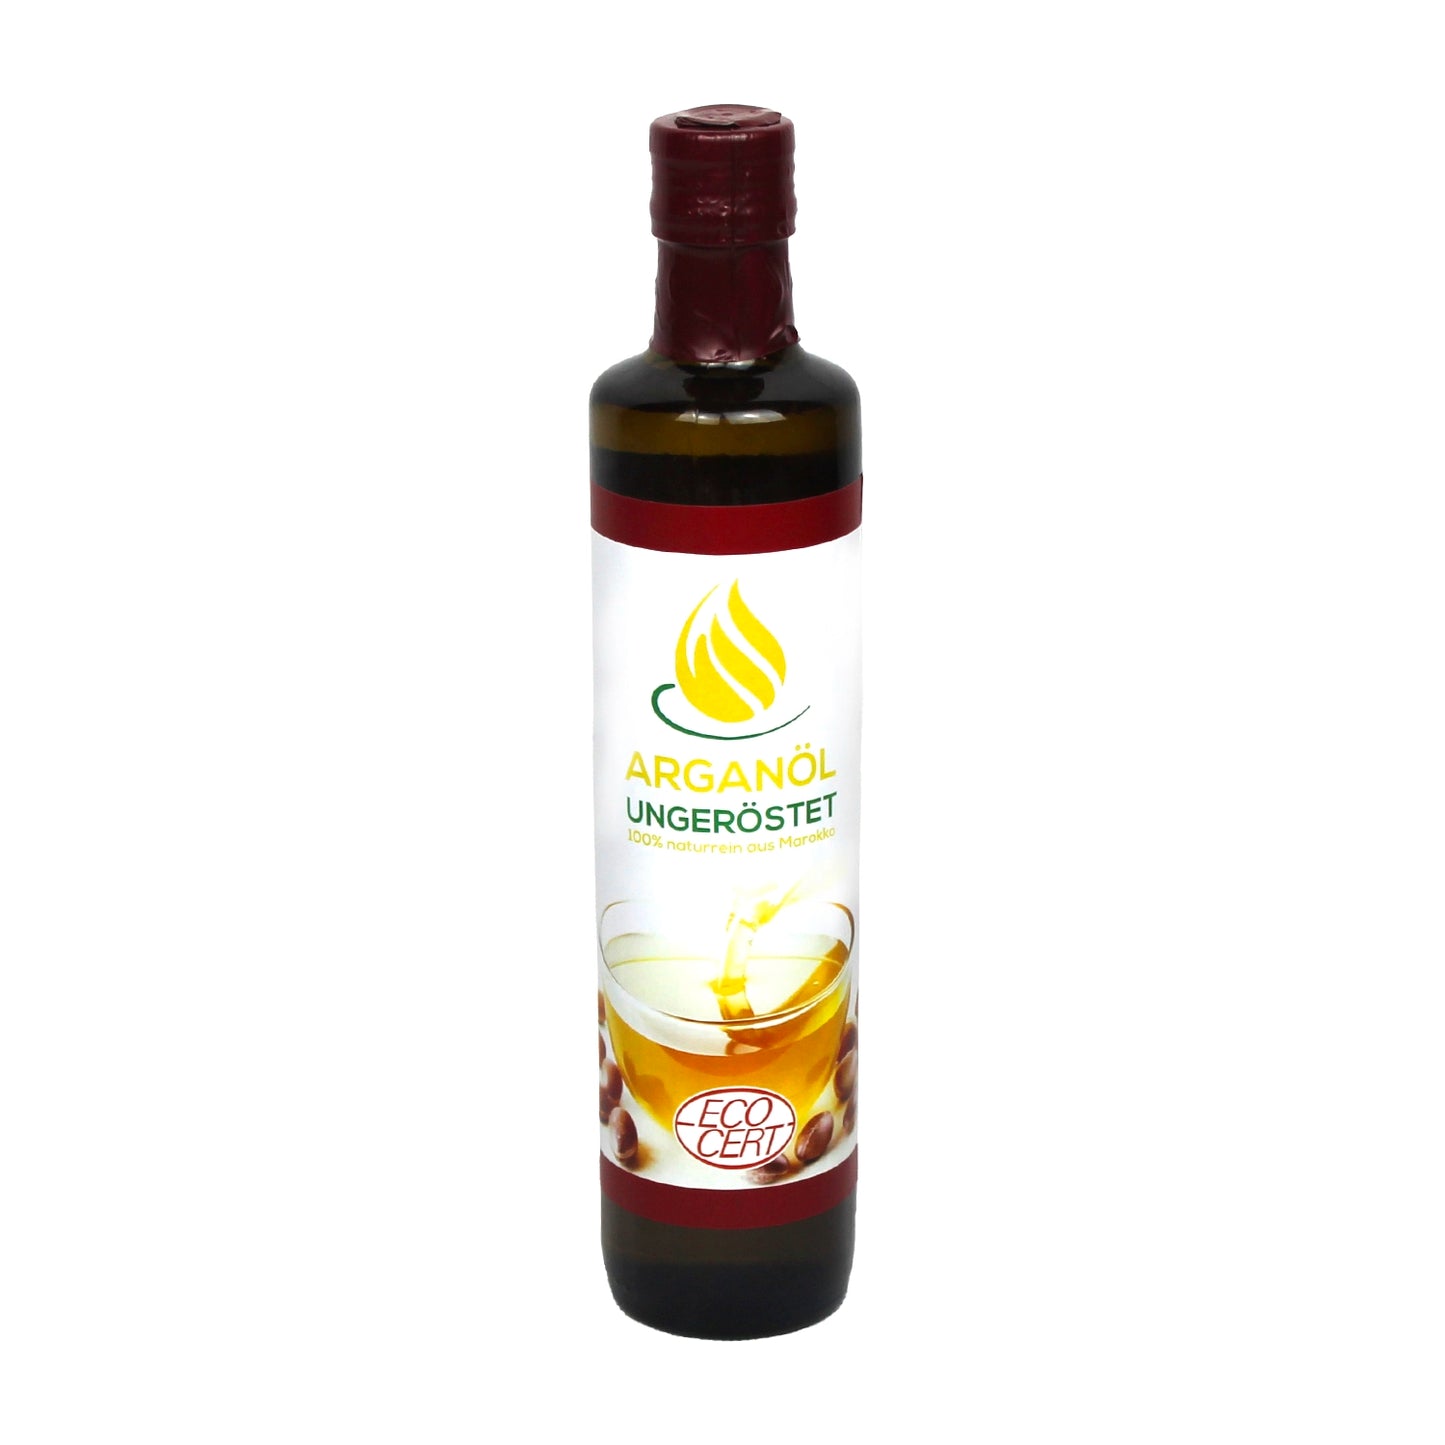 Arganöl, ungeröstet (große Flasche 500 ml)